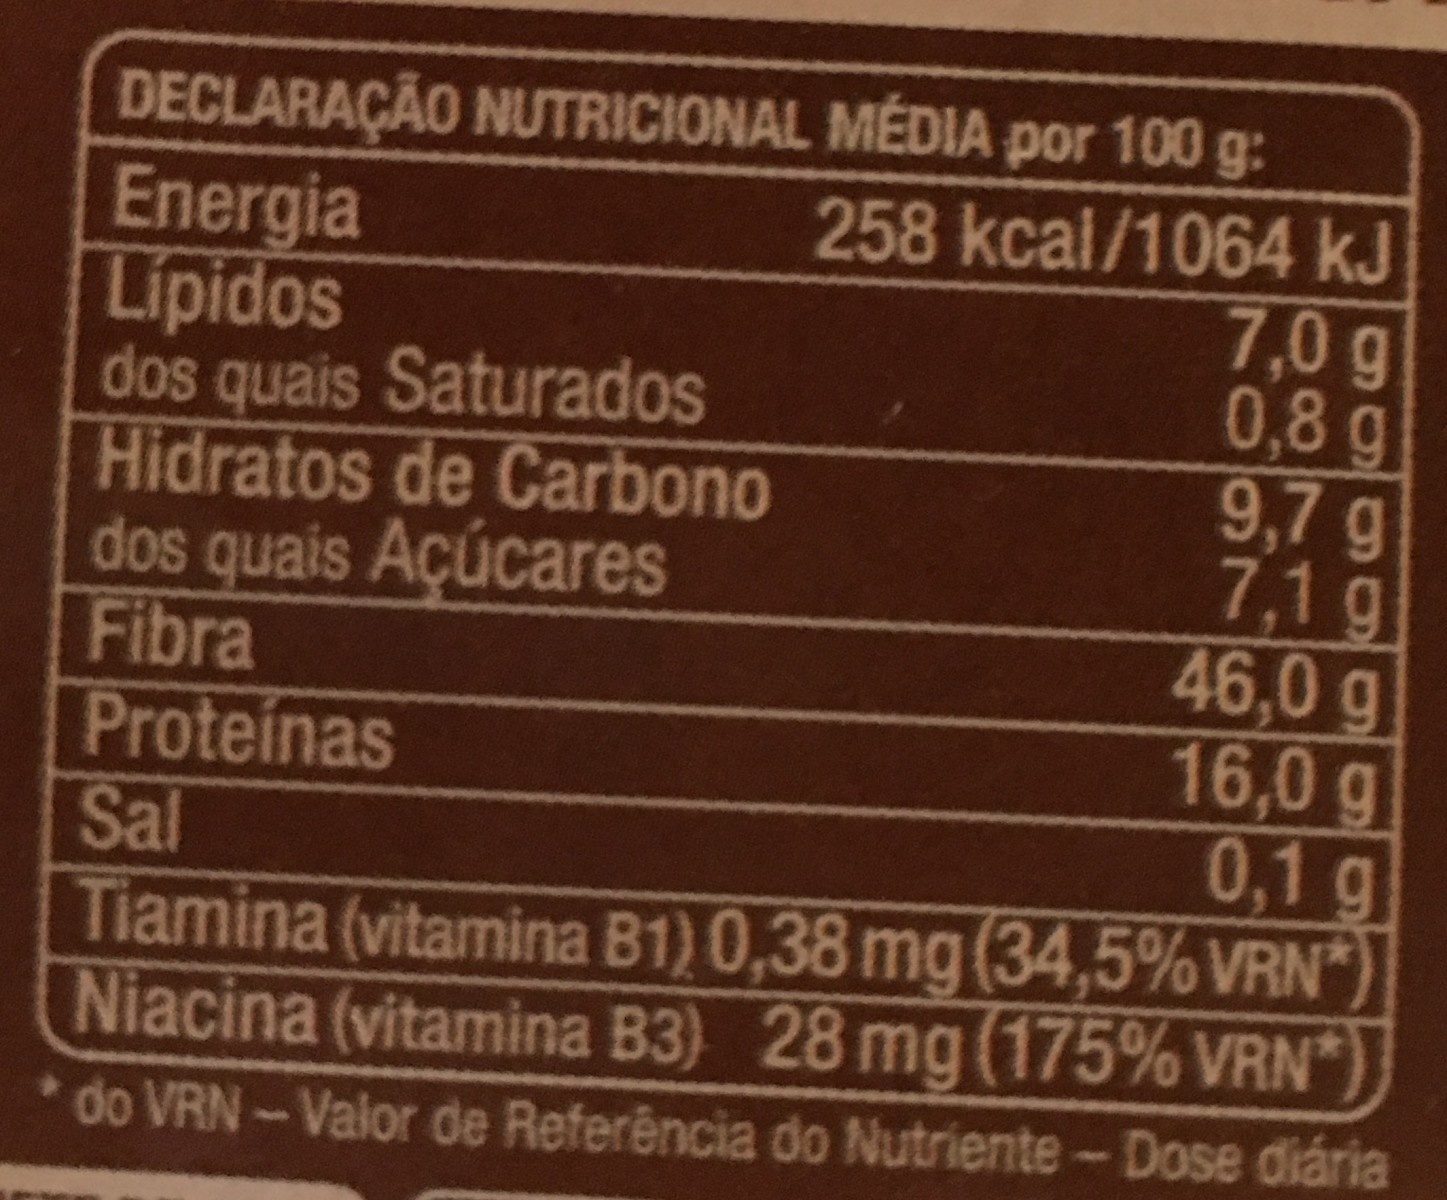 Farelo de trigo - Nutrition facts - pt